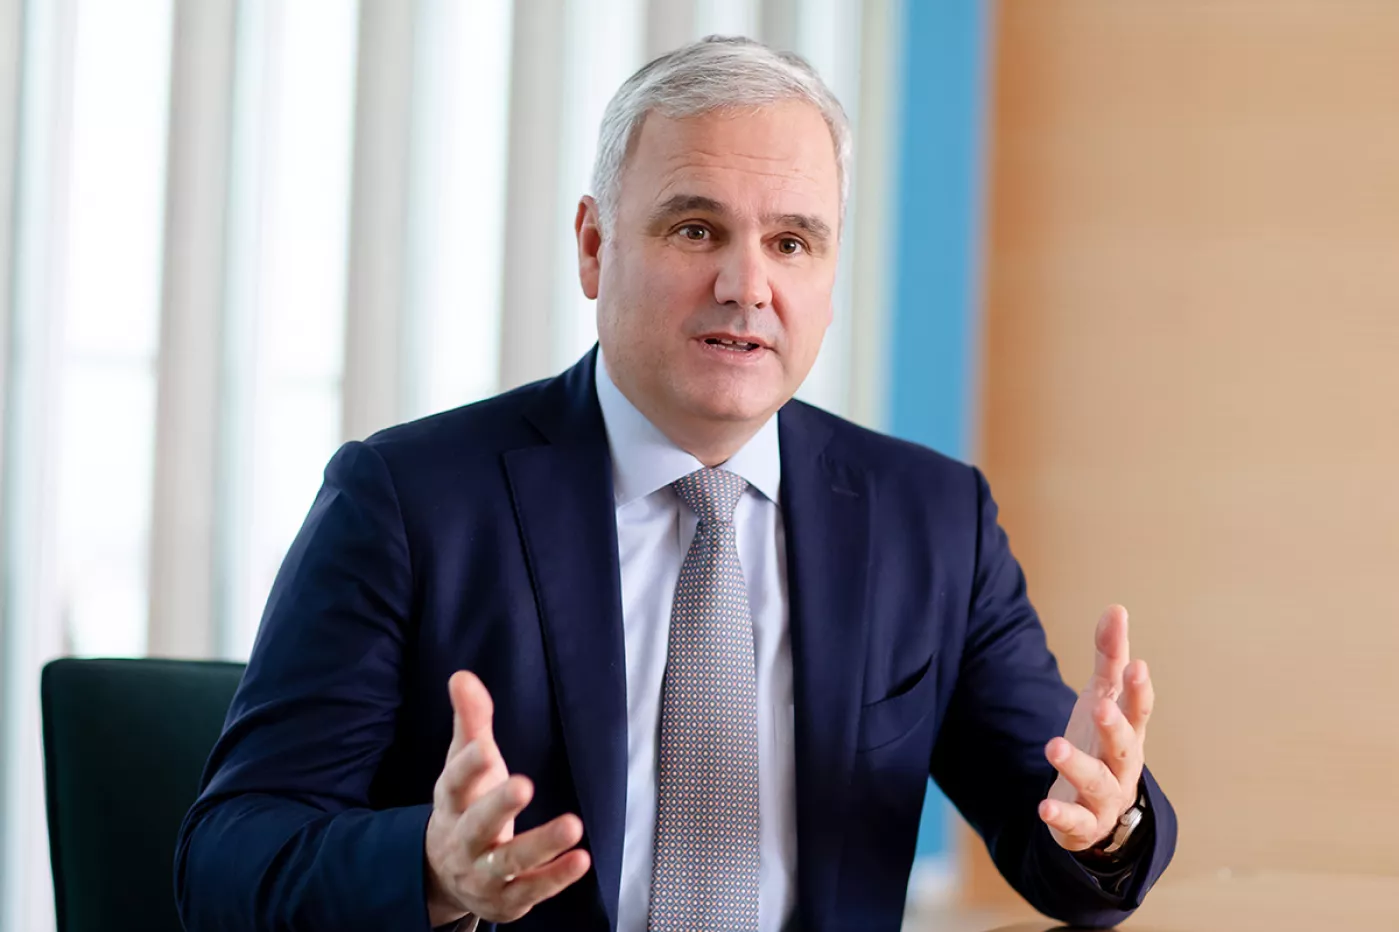 Stefan Oelrich, miembro del Comité Directivo y presidente de la División Farmacéutica de Bayer, explica la apuesta de la compañía por la digitalización y por ganar presencia en oncología.